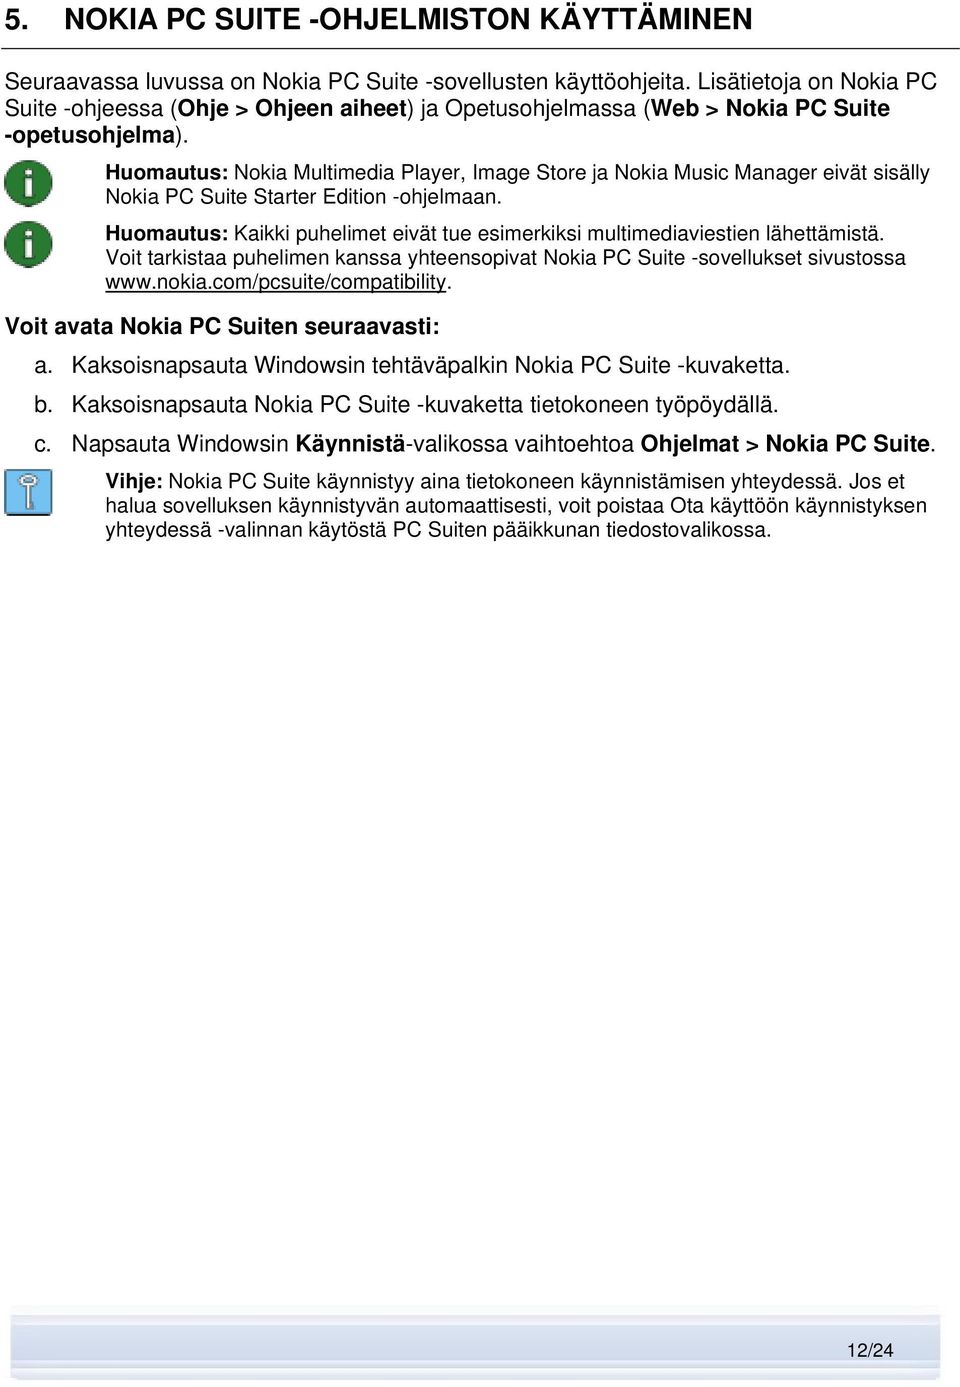 Huomautus: Nokia Multimedia Player, Image Store ja Nokia Music Manager eivät sisälly Nokia PC Suite Starter Edition -ohjelmaan.